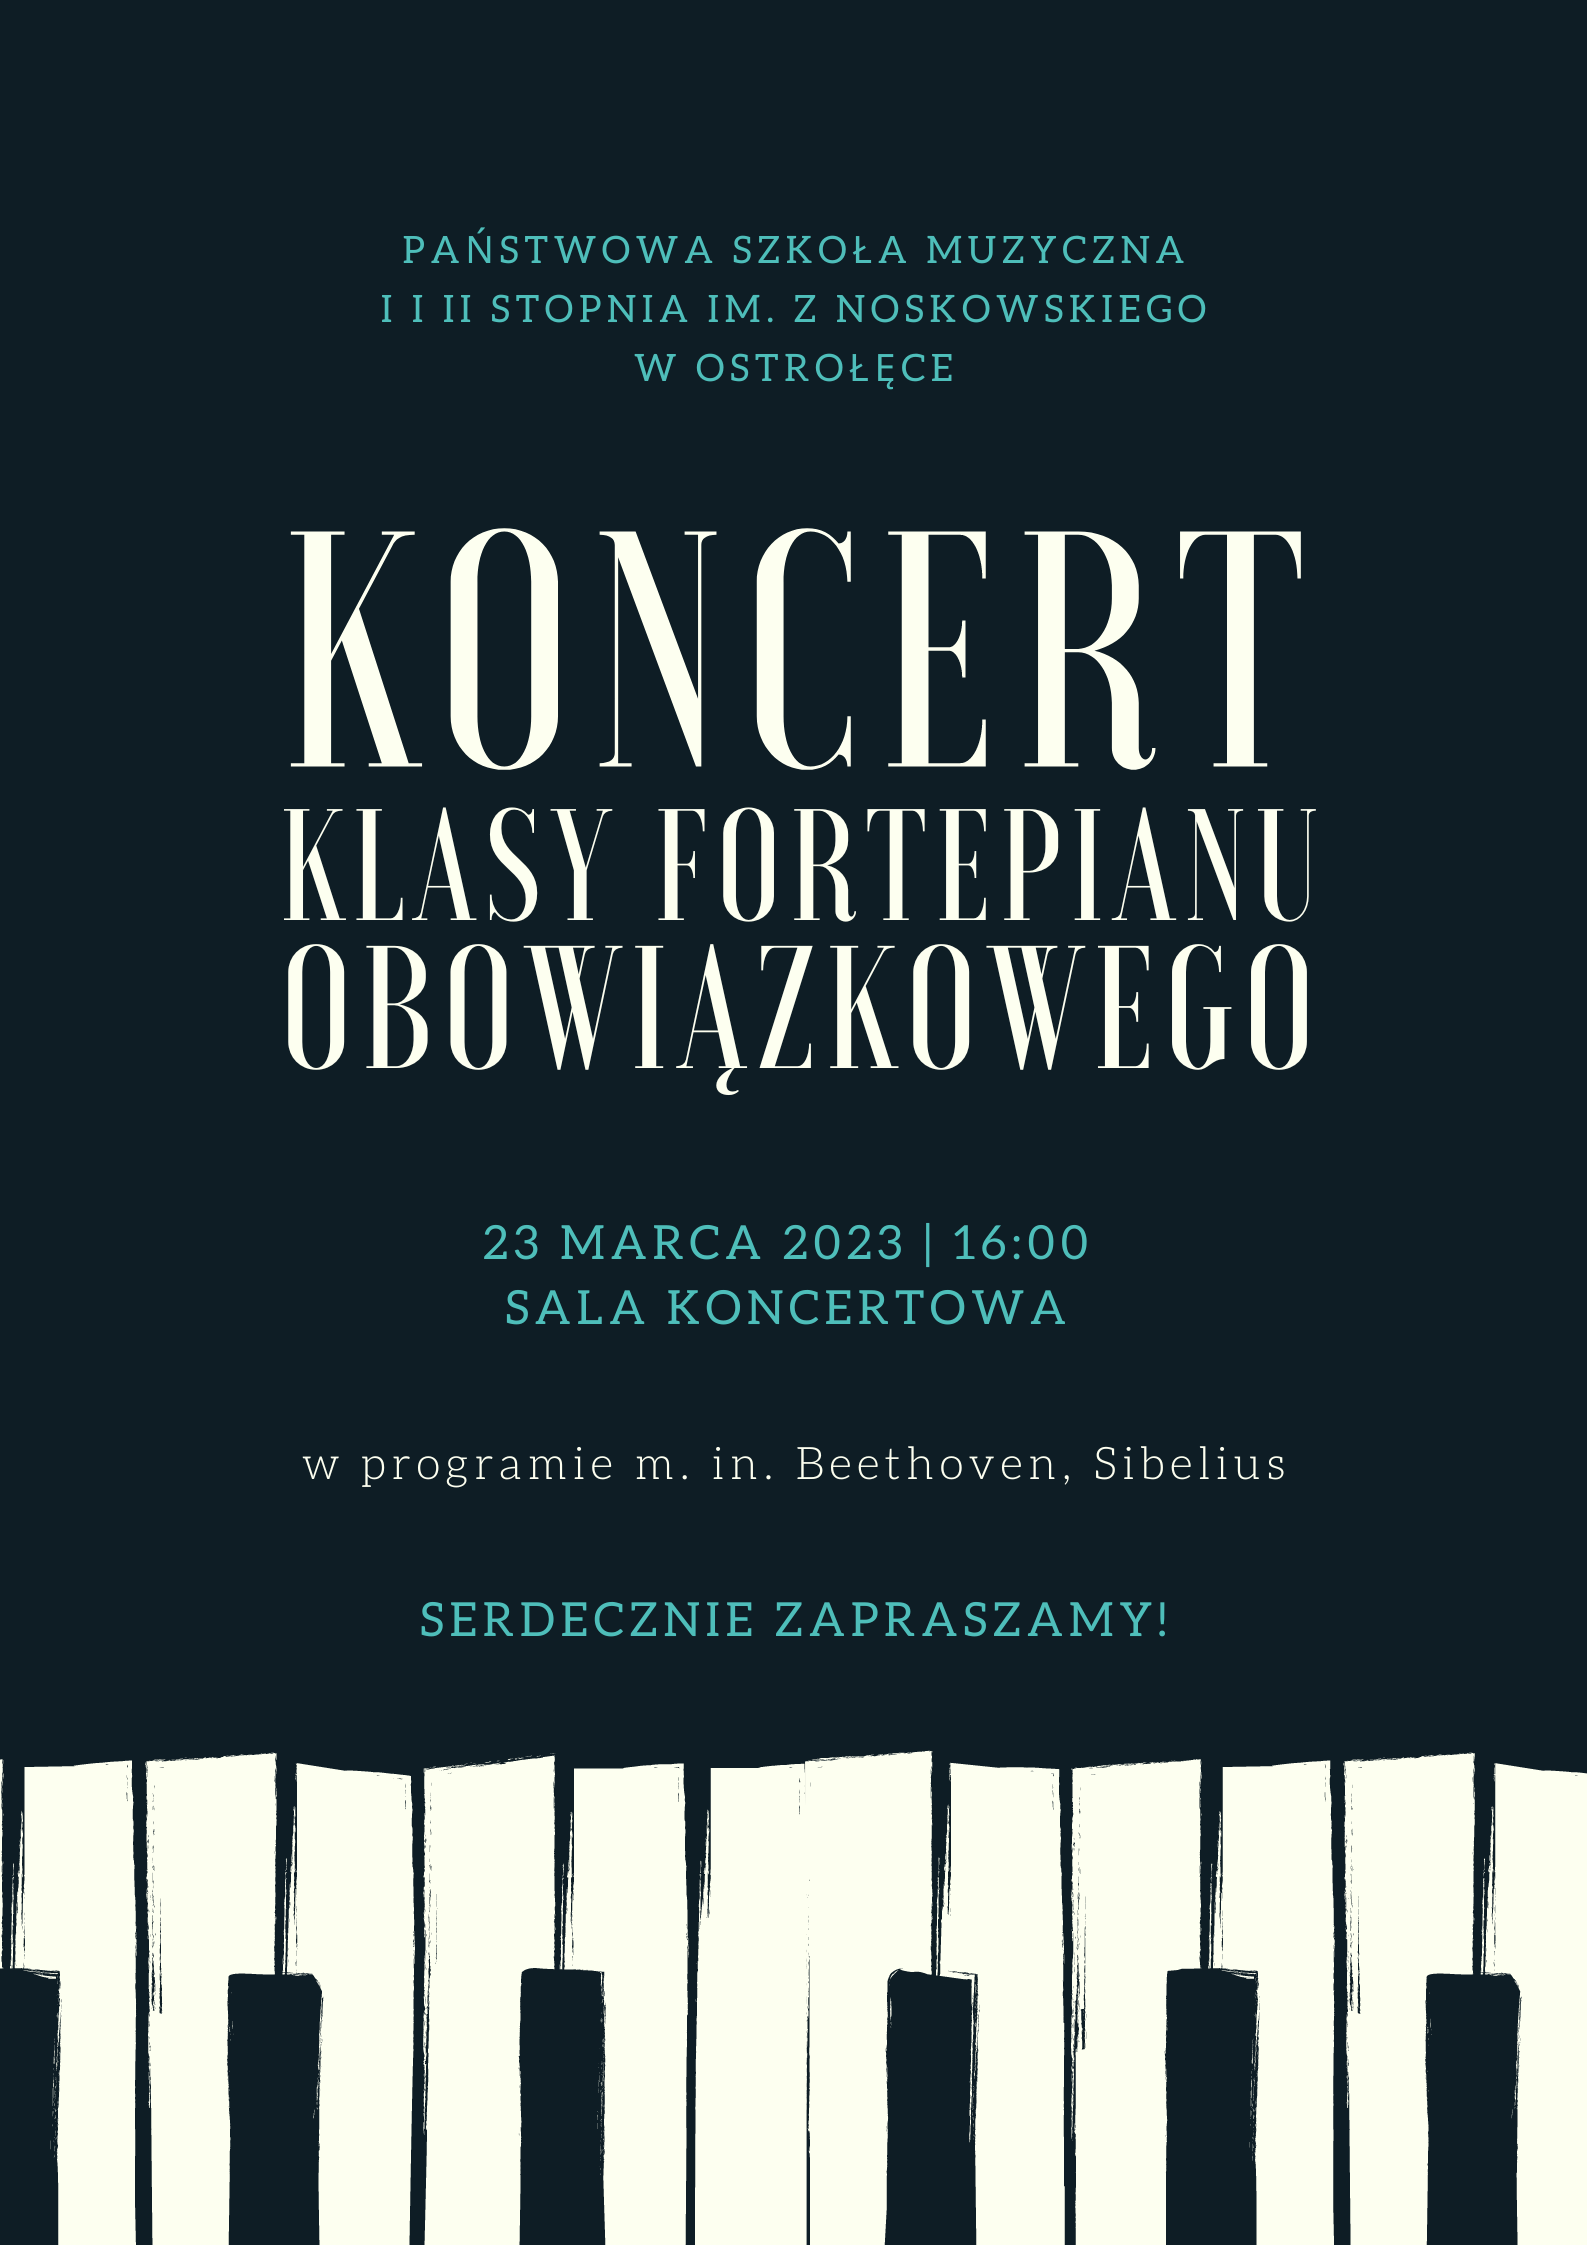 Plakat o treści: Koncert klasy fortepianu obowiązkowego - 23 marca 2023, 16:00, sala koncertowa, w programie m. in. Beethoven, Sibelius, serdecznie zapraszamy!